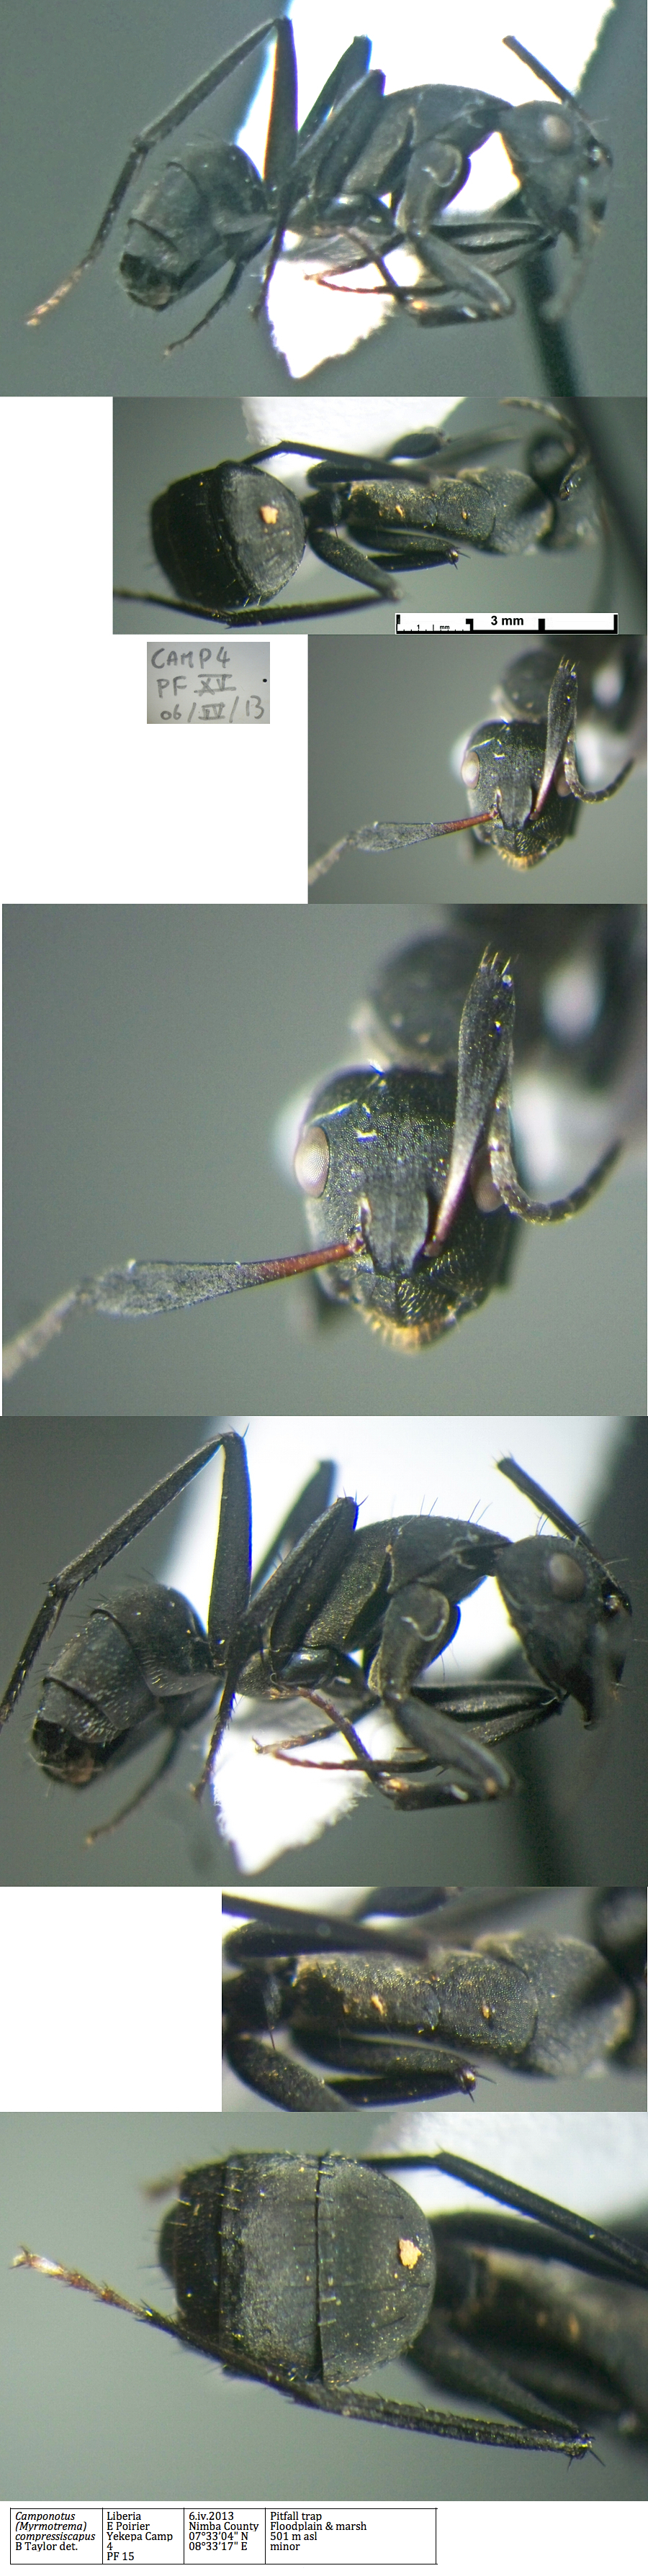 {Camponotus compressiscapus minor}